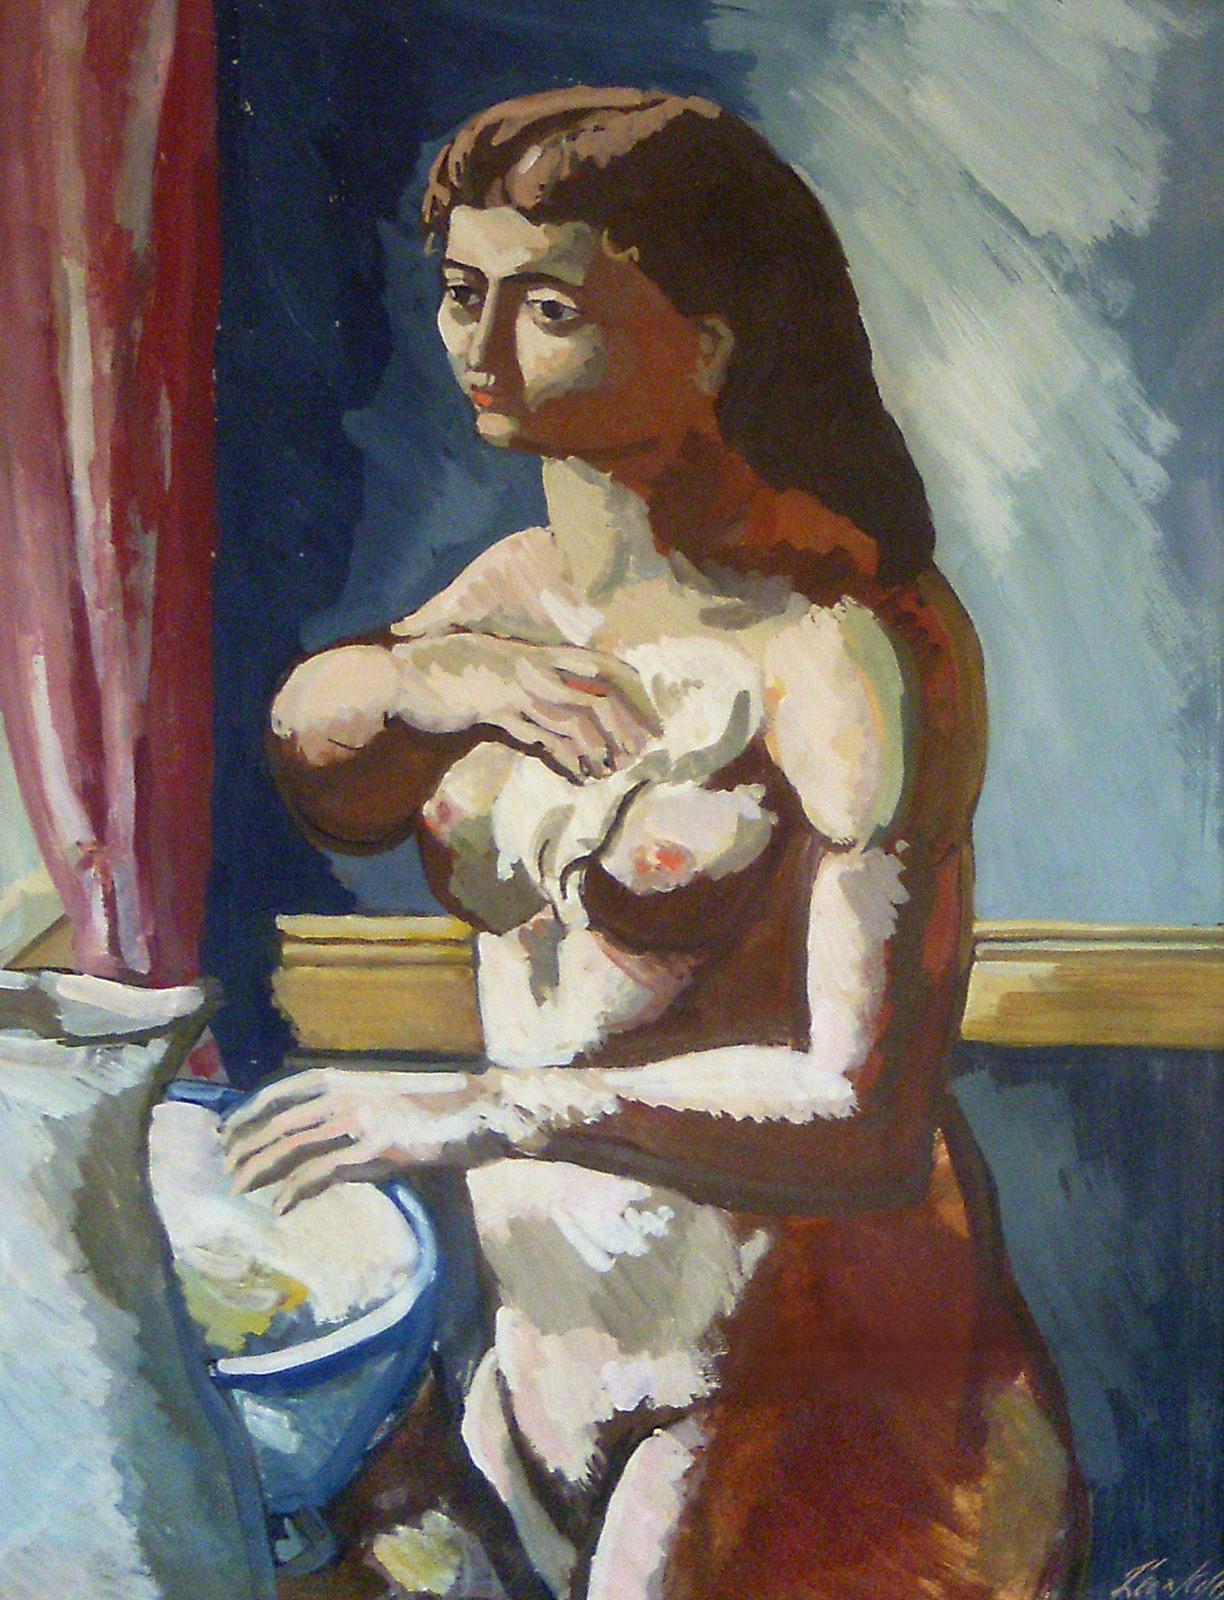 Portrait Painting Leon Kelly - Woman at Basin, portrait d'une femme nue de style Picasso, moderniste américain